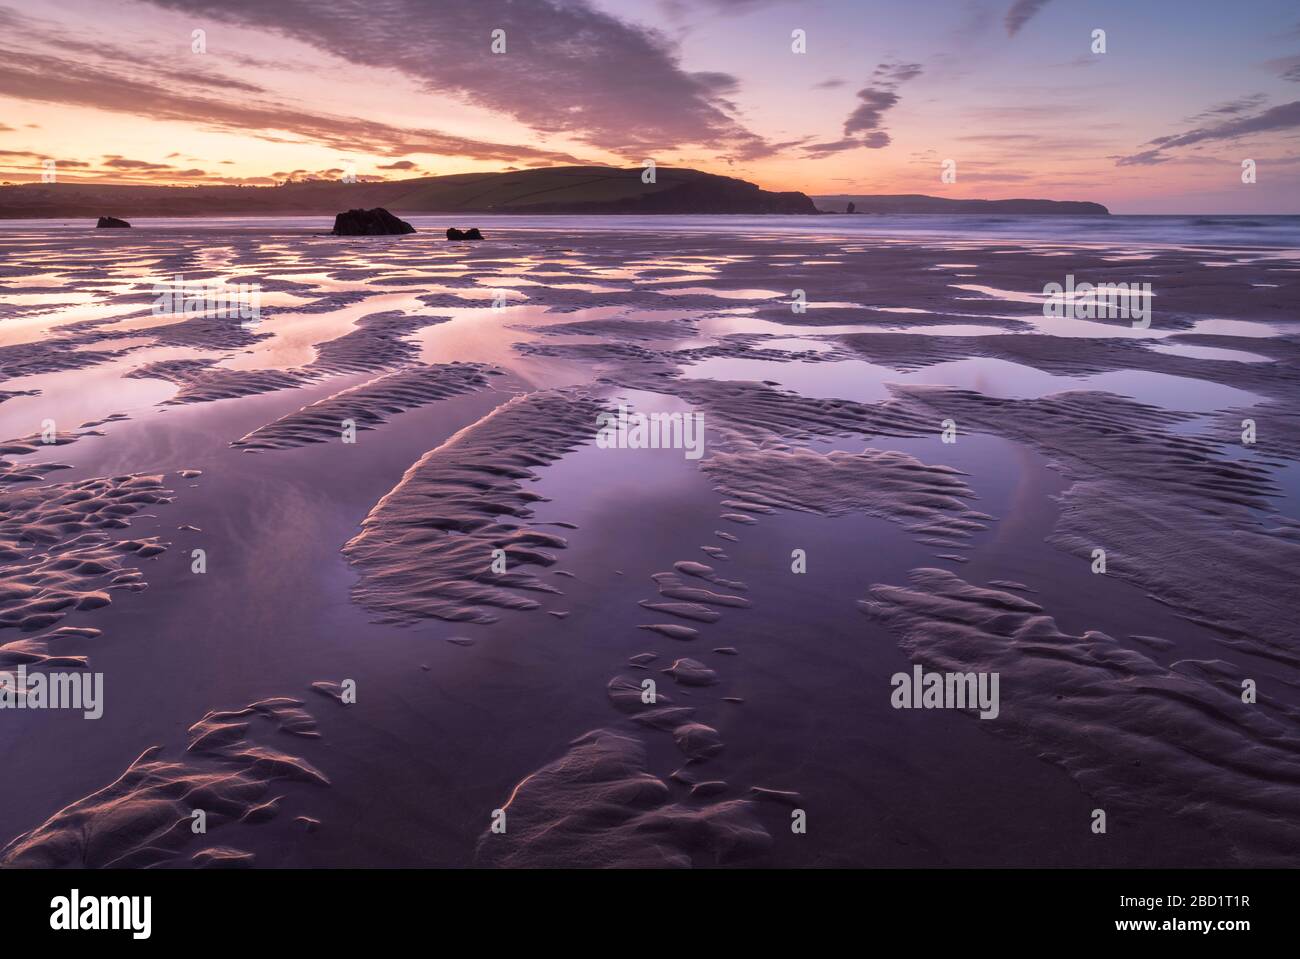 Ciel rose au lever du soleil en hiver au-dessus de la plage de sable de Bigbury-on-Sea, South Hams, Devon, Angleterre, Royaume-Uni, Europe Banque D'Images